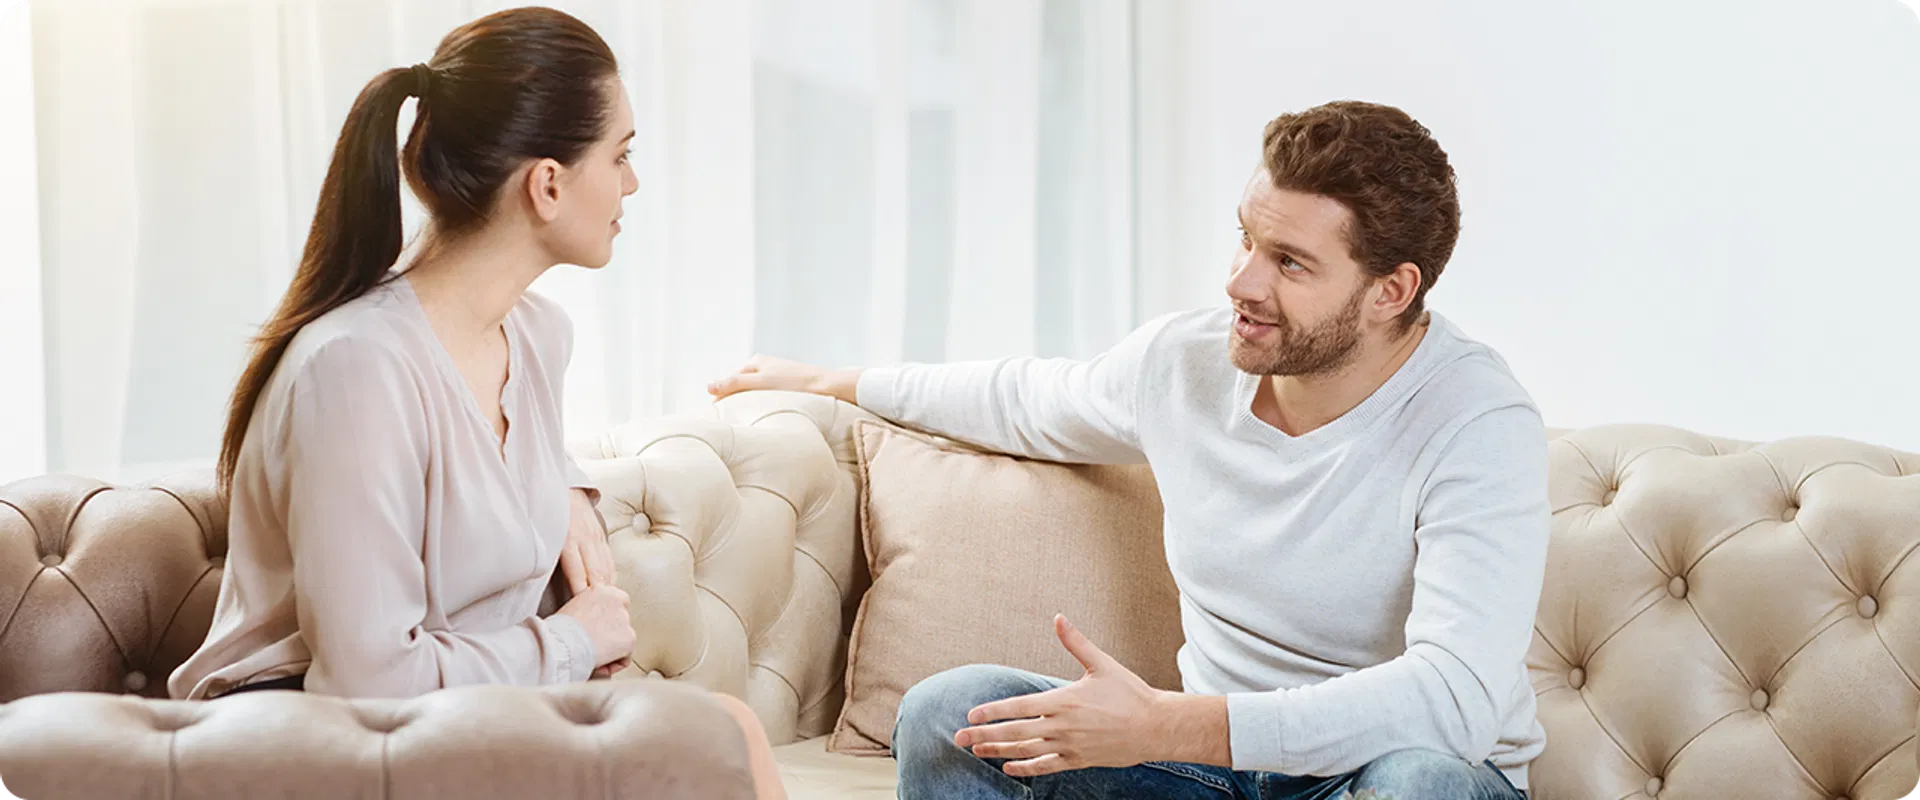 Mies ja nainen keskustelevat lainatarjouksista sohvalla